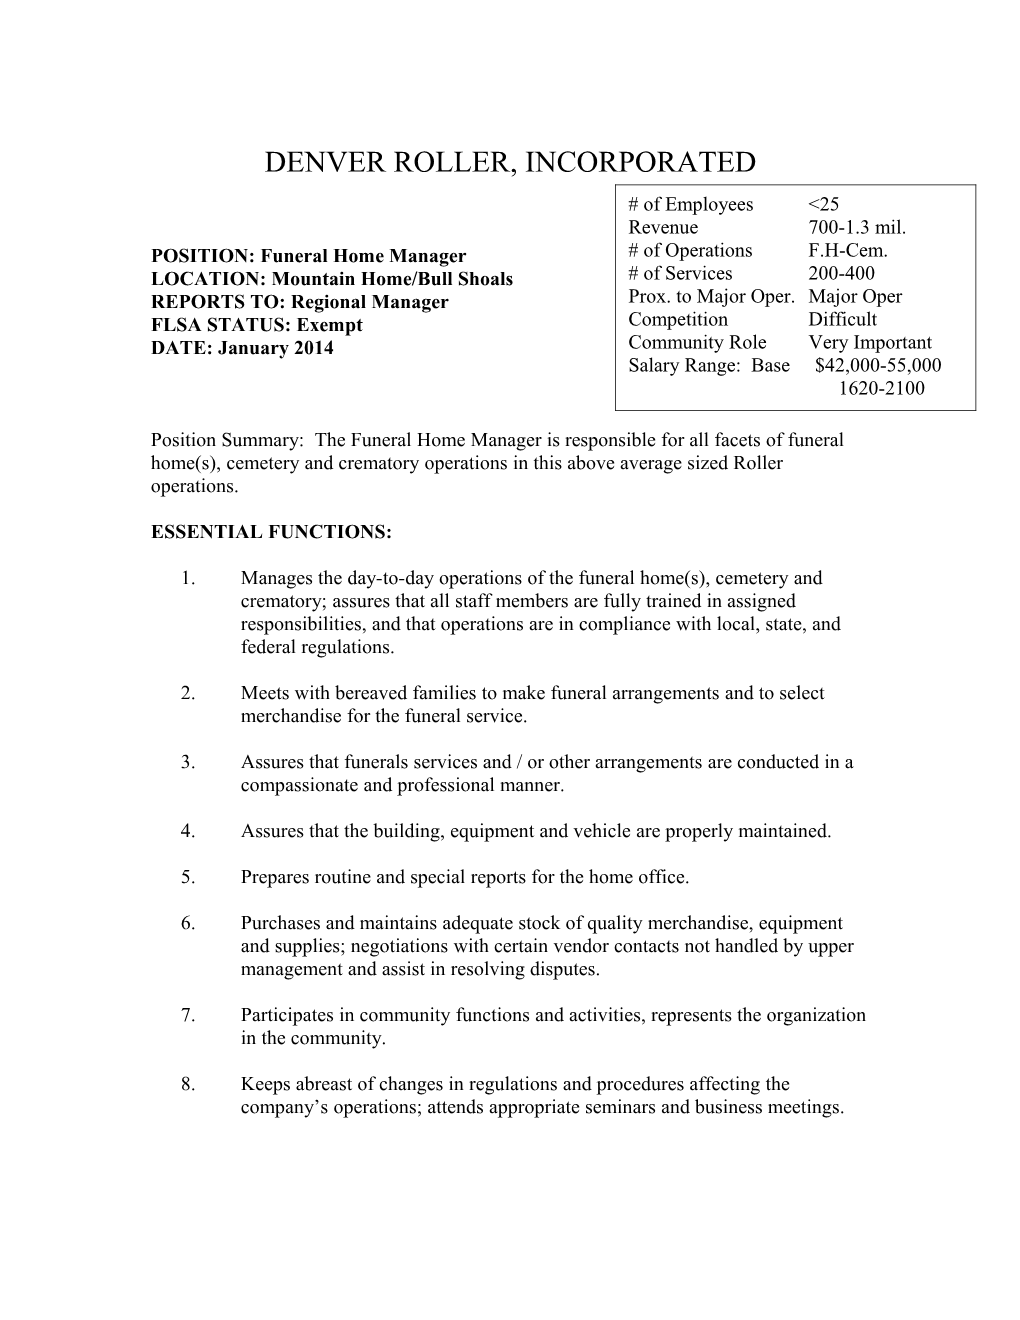 Denver Roller, Incorporated